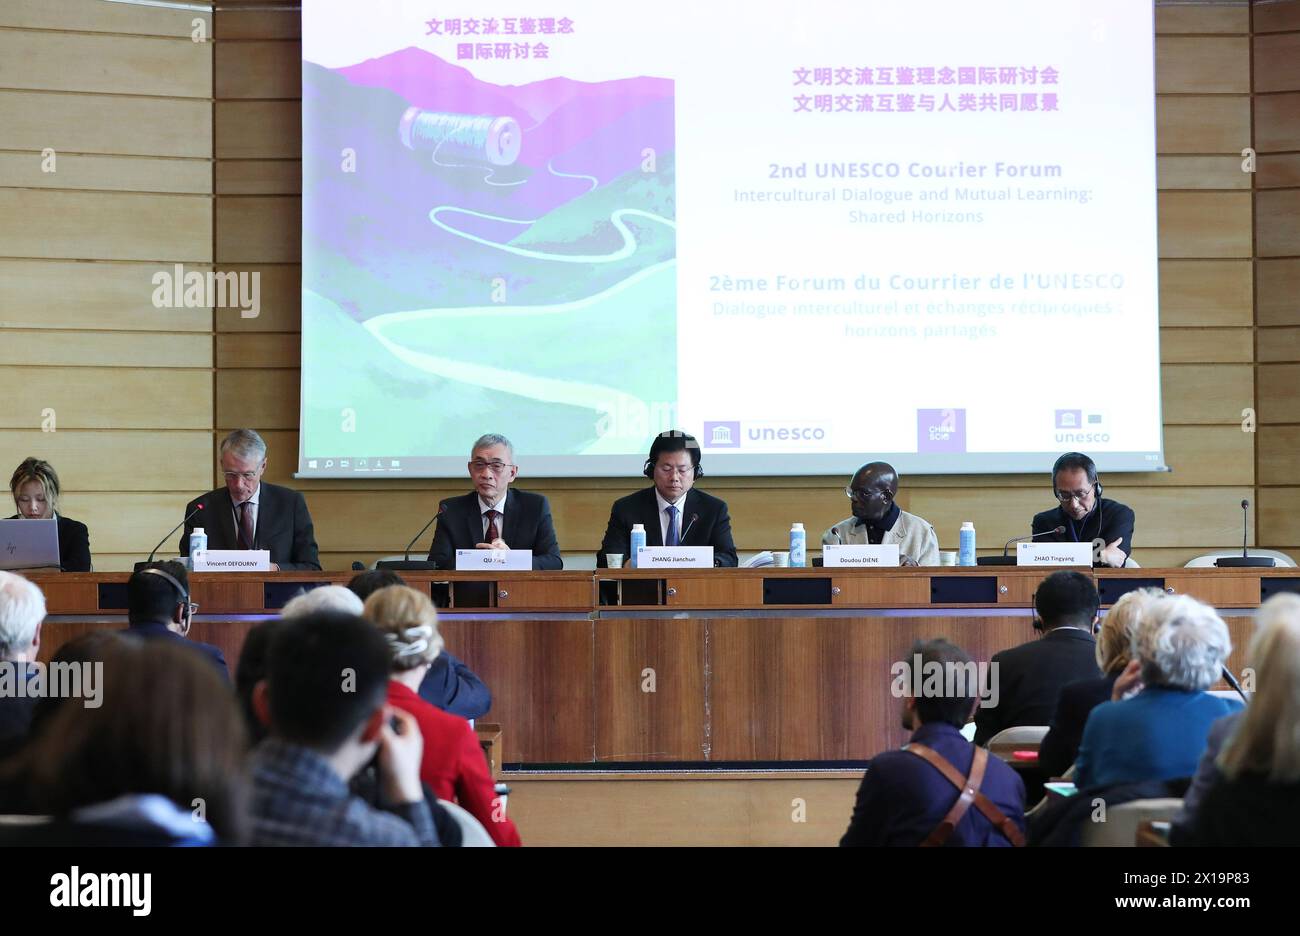 (240416) - PARÍS, 16 de abril de 2024 (Xinhua) -- Delegados asisten a un simposio internacional sobre el concepto de intercambios interculturales y aprendizaje mutuo entre civilizaciones, celebrado en la sede de la Organización de las Naciones Unidas para la Educación, la Ciencia y la Cultura (UNESCO) en París, Francia, 15 de abril de 2024. El simposio, celebrado en la sede de la UNESCO, examinó la dimensión histórica de los intercambios culturales a lo largo de las Rutas de la Seda, así como el diálogo intercultural y el aprendizaje mutuo en el mundo contemporáneo. Unas 200 personas asistieron al simposio organizado conjuntamente por el Estado de China Foto de stock